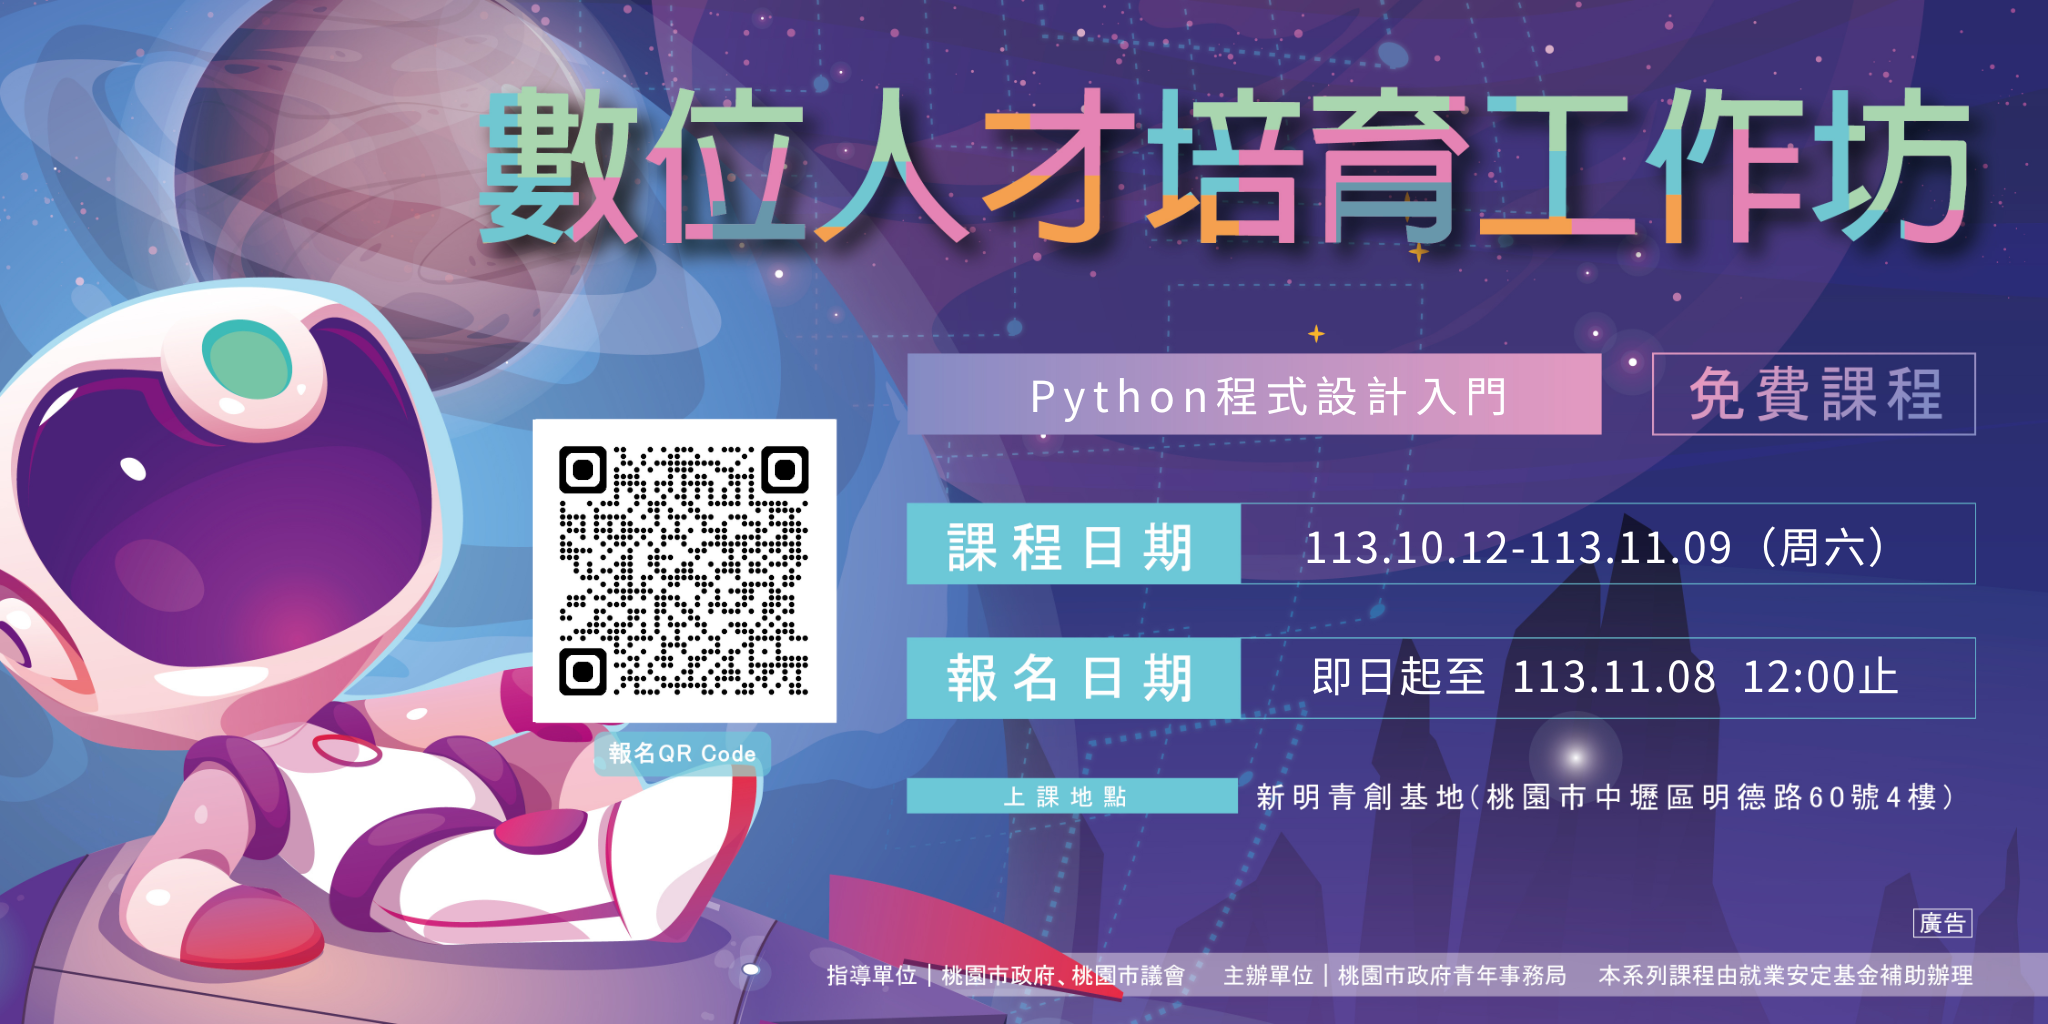 【新明青創基地】數位人才培育工作坊#14: Python程式設計入門